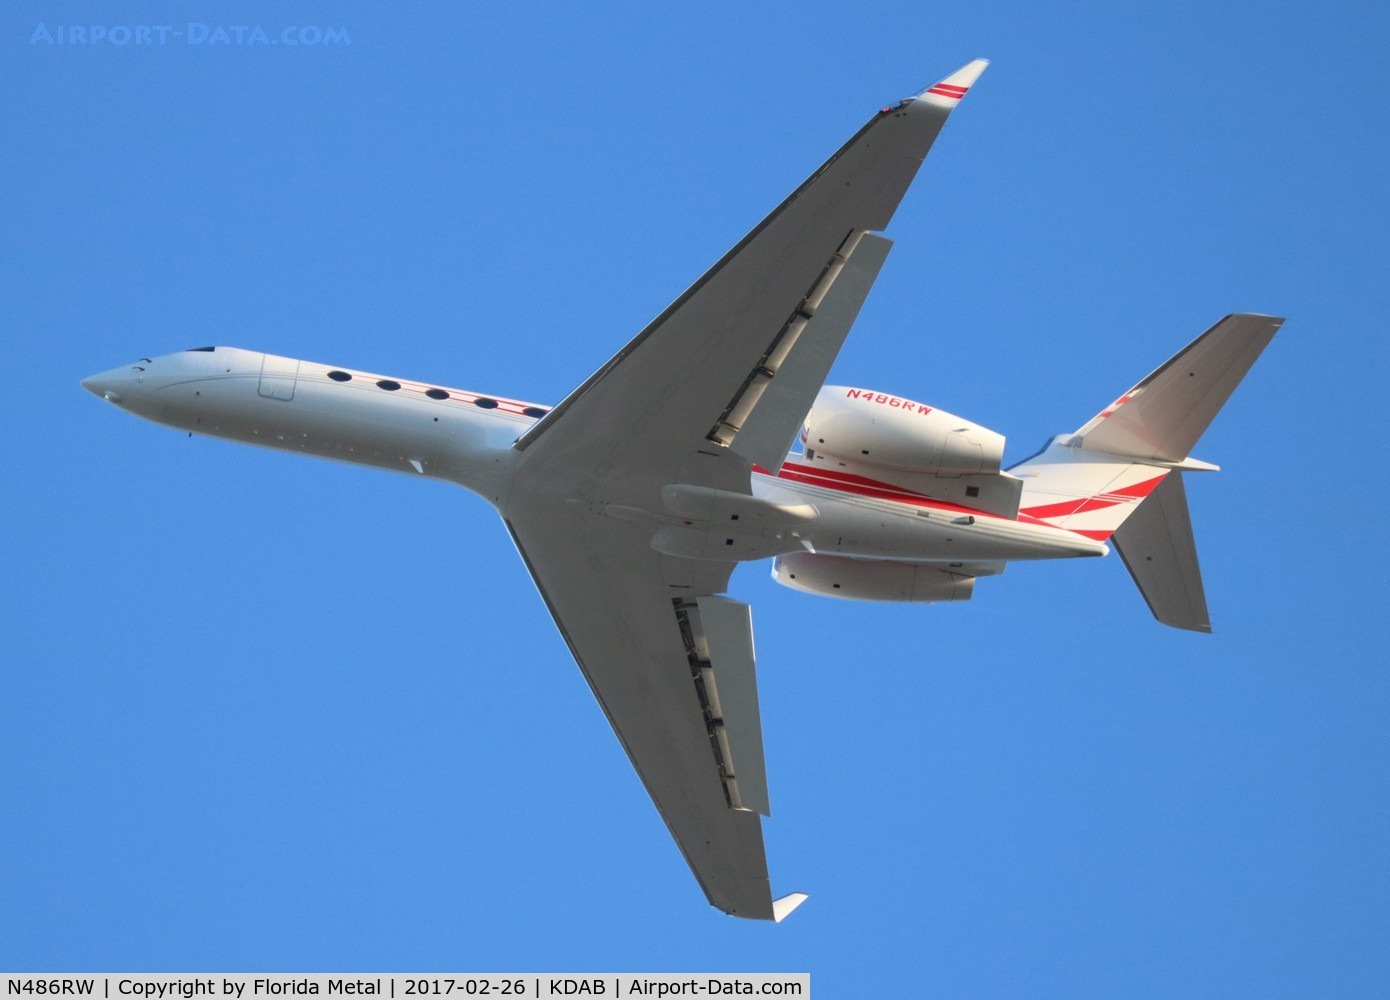 N486RW, 2014 Gulfstream Aerospace GV-SP (G550) C/N 5484, G550 zx